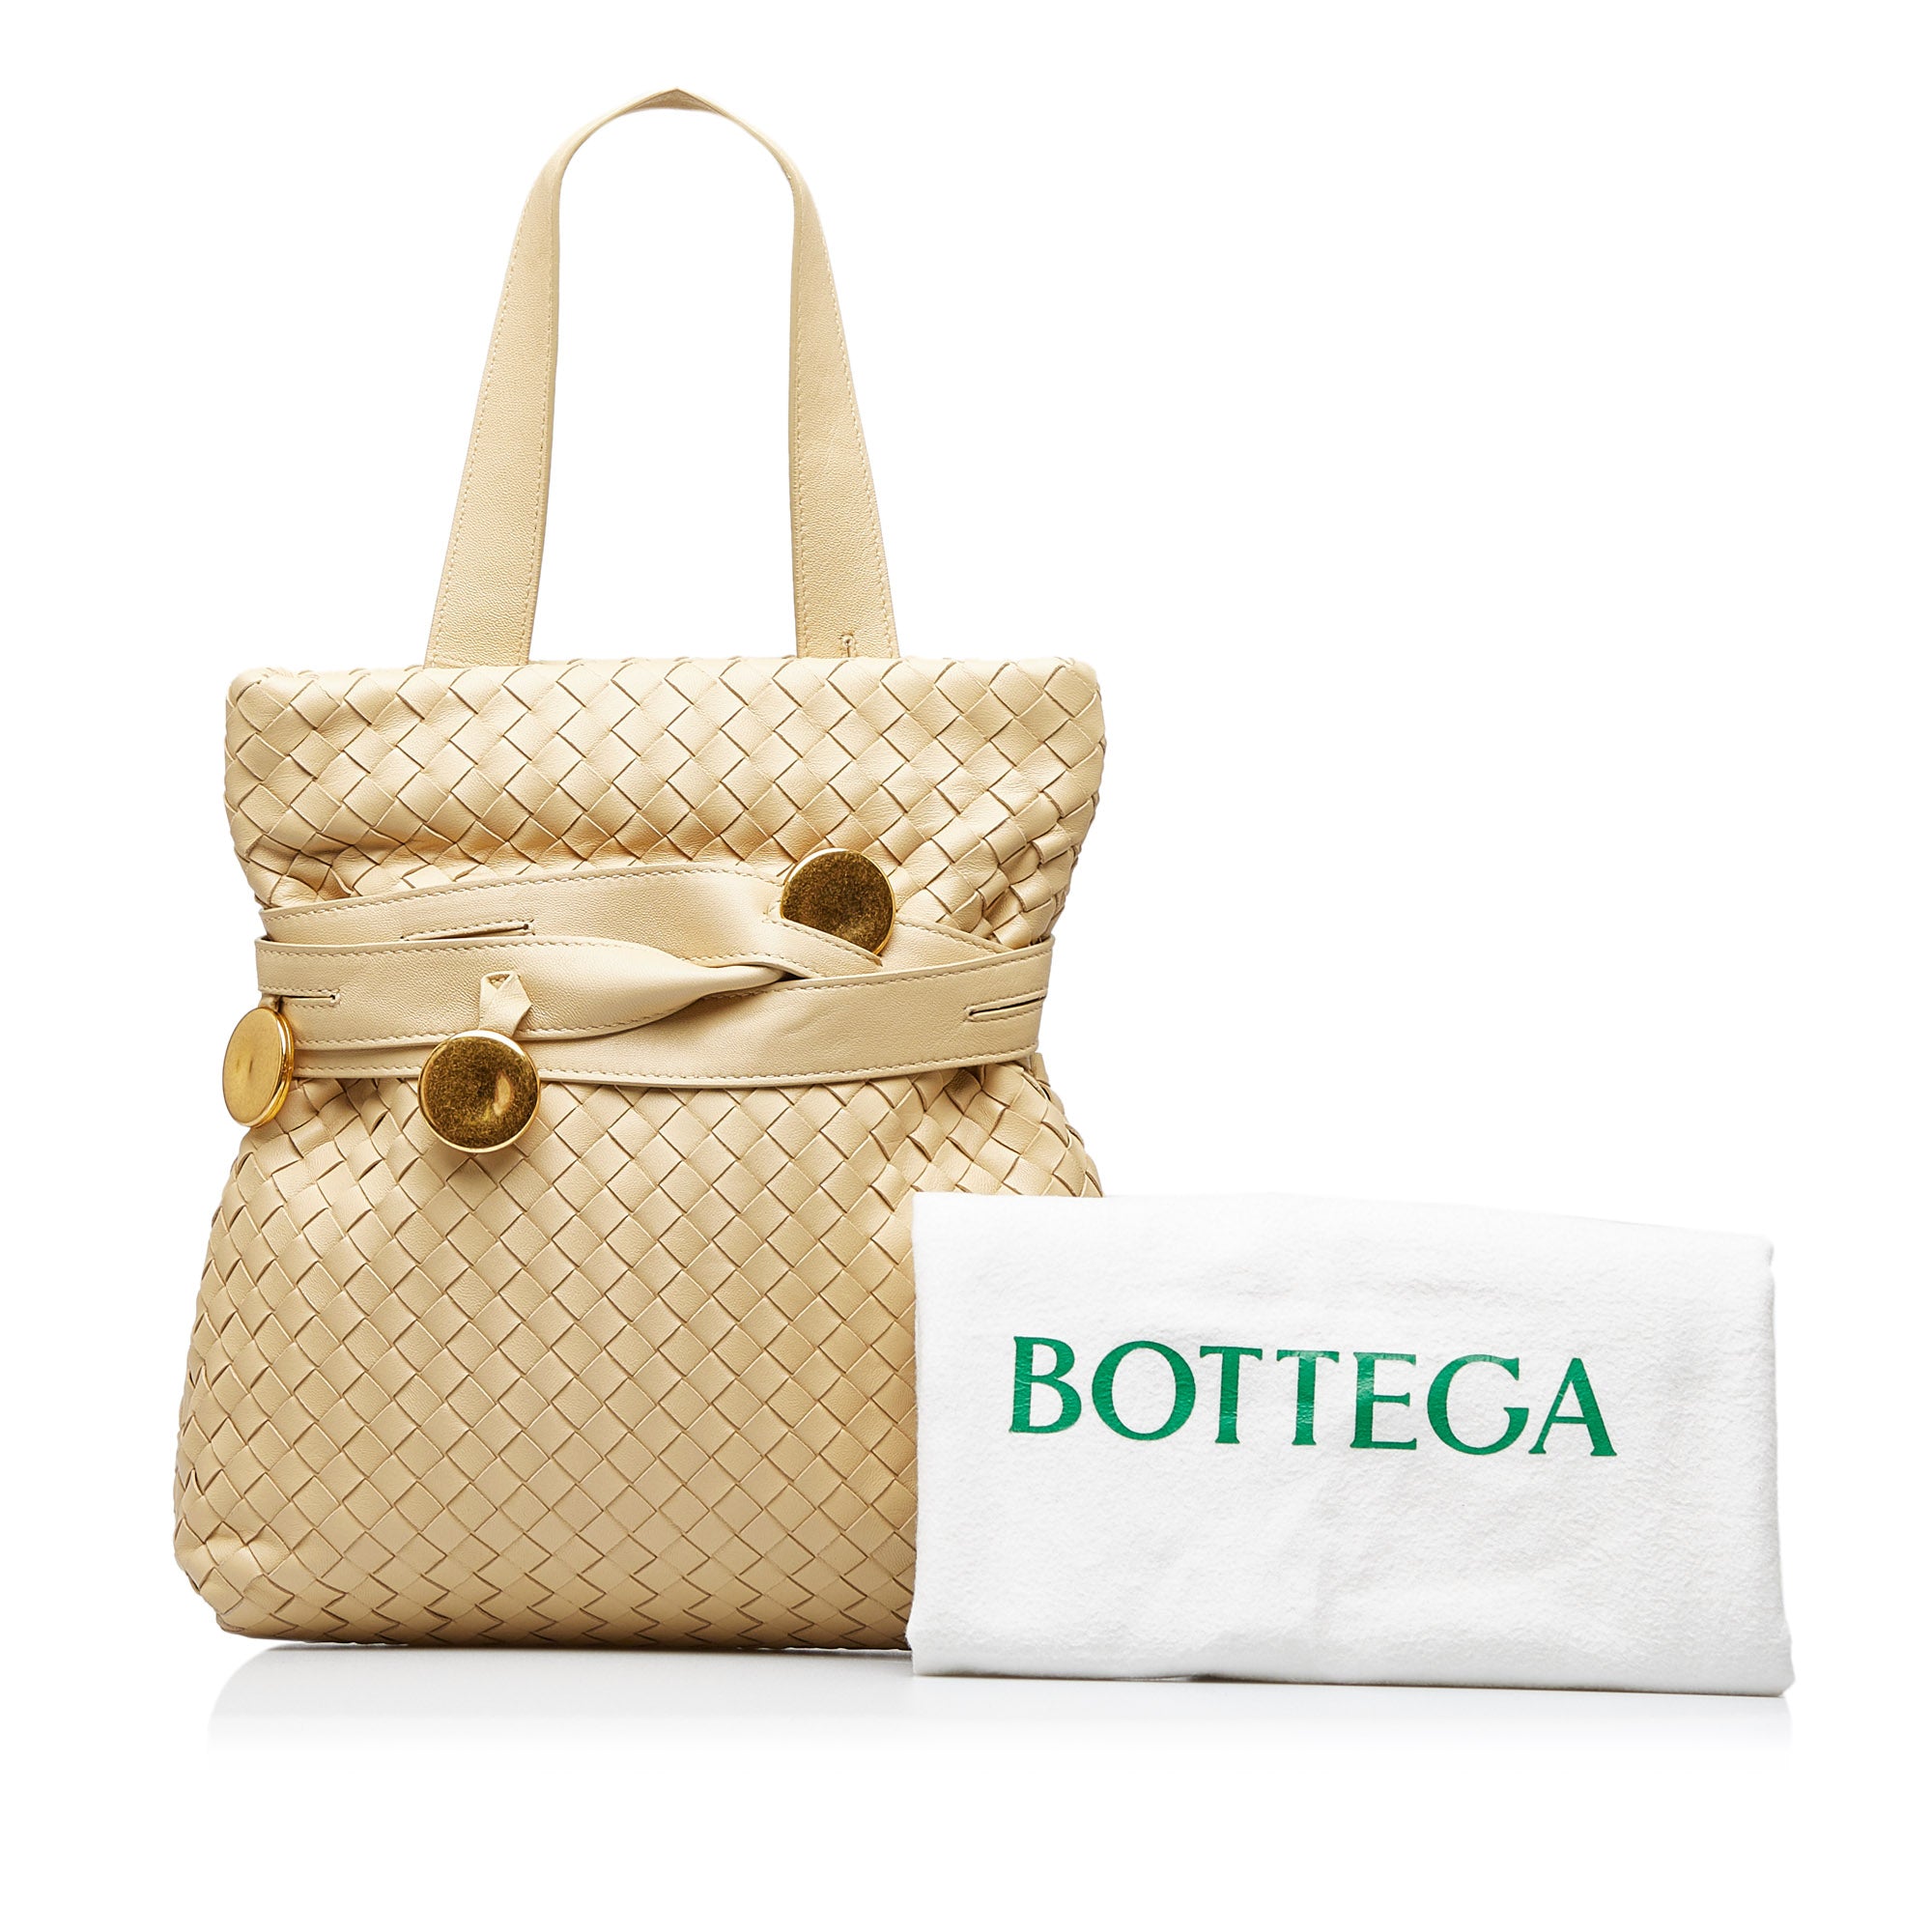 Bottega Veneta Intrecciato Belted Tote Bag